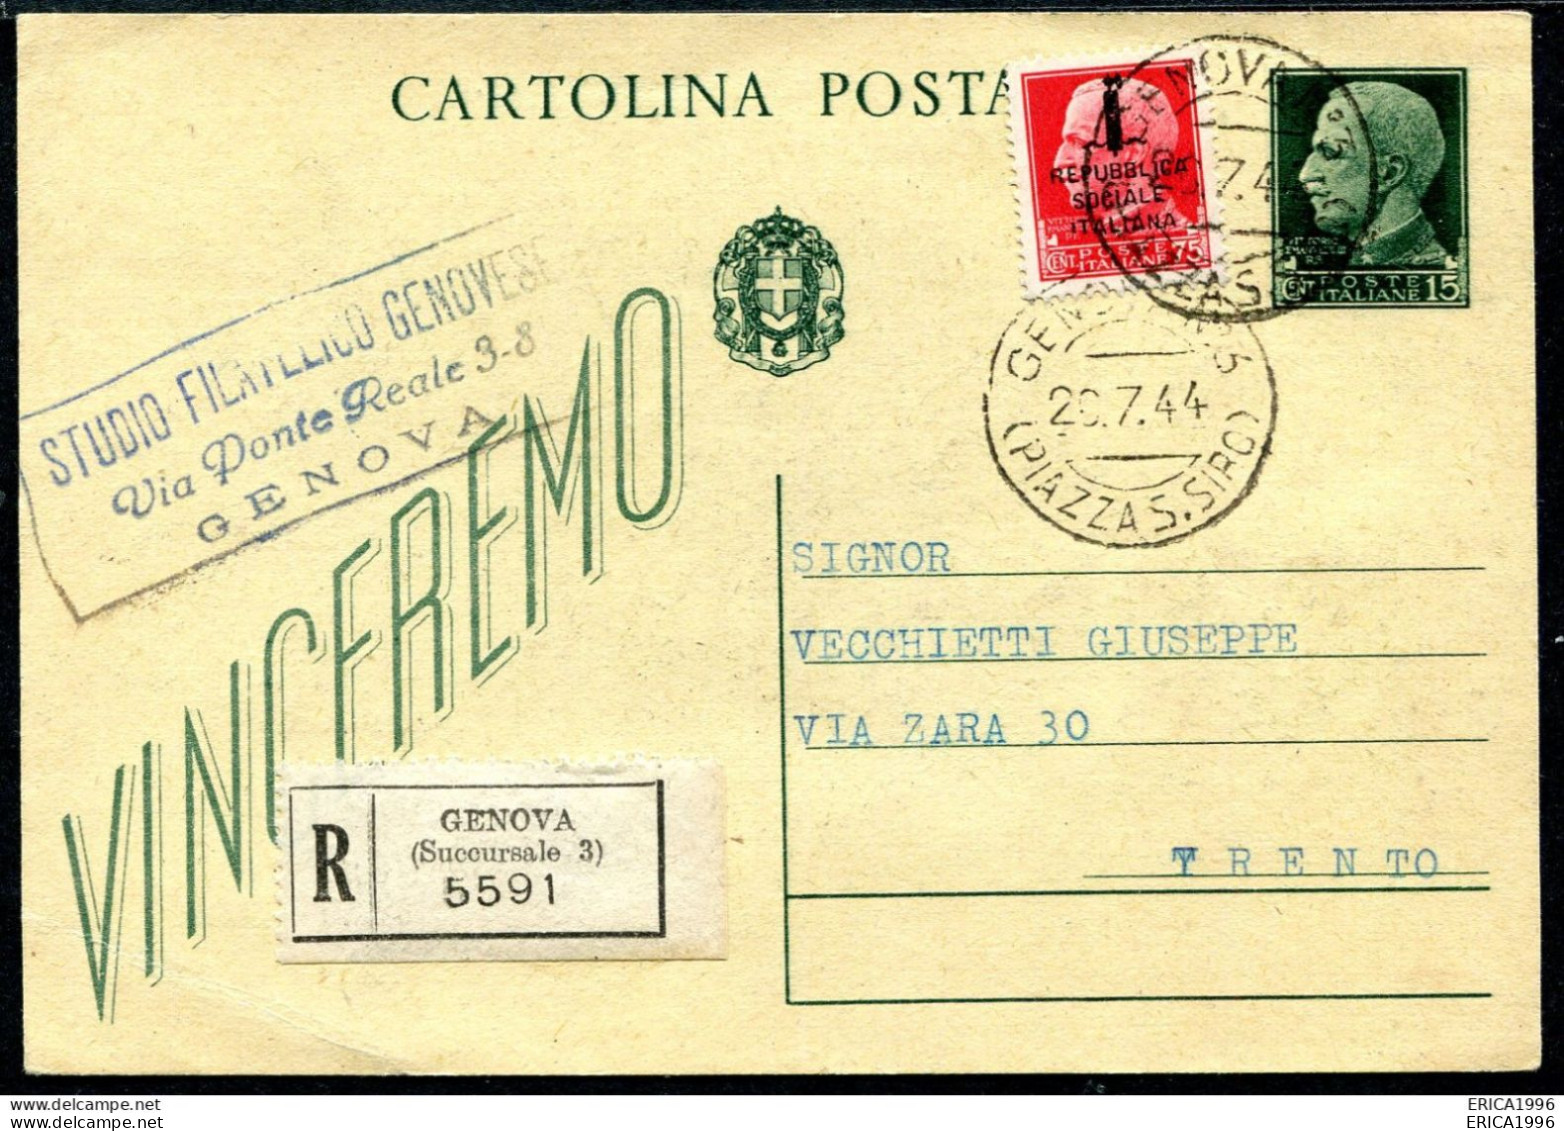 Z3656 ITALIA RSI 1944 Cartolina Postale Regno Vinceremo 15 C. (Fil. C97a) Viaggiata In Periodo RSI, Da Genova 26.7.44 - Stamped Stationery